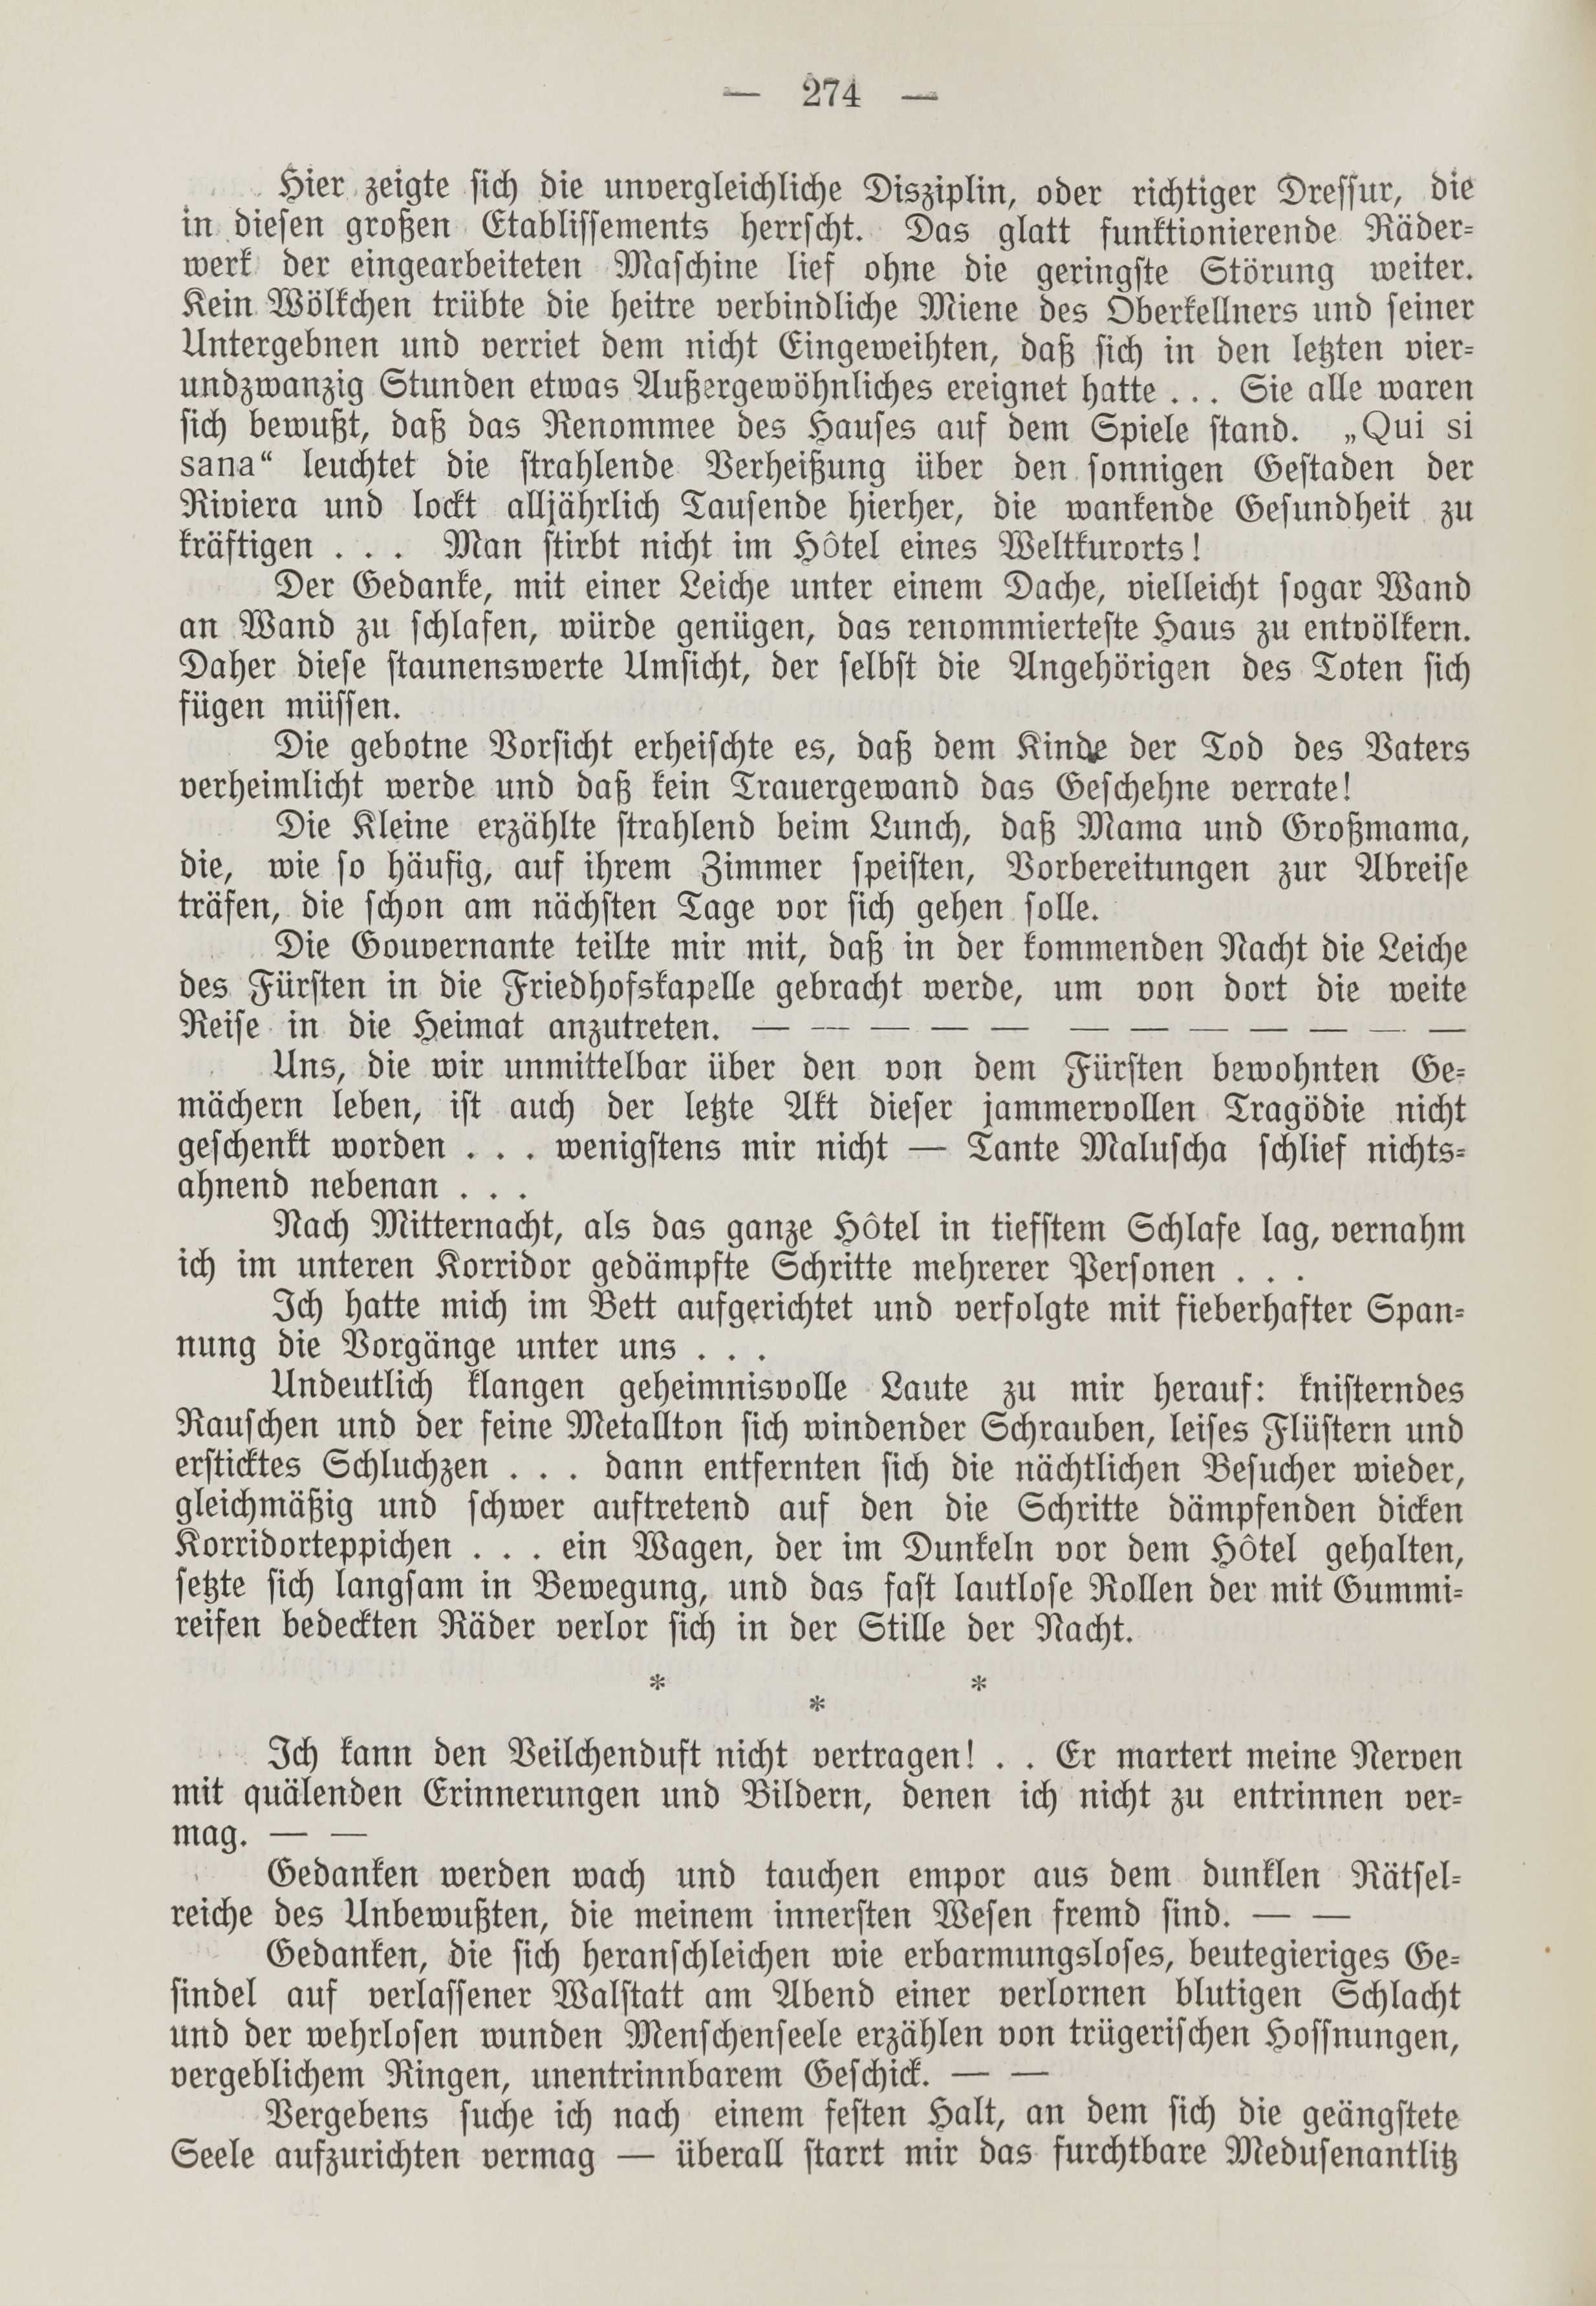 Deutsche Monatsschrift für Russland [1] (1912) | 282. (274) Main body of text